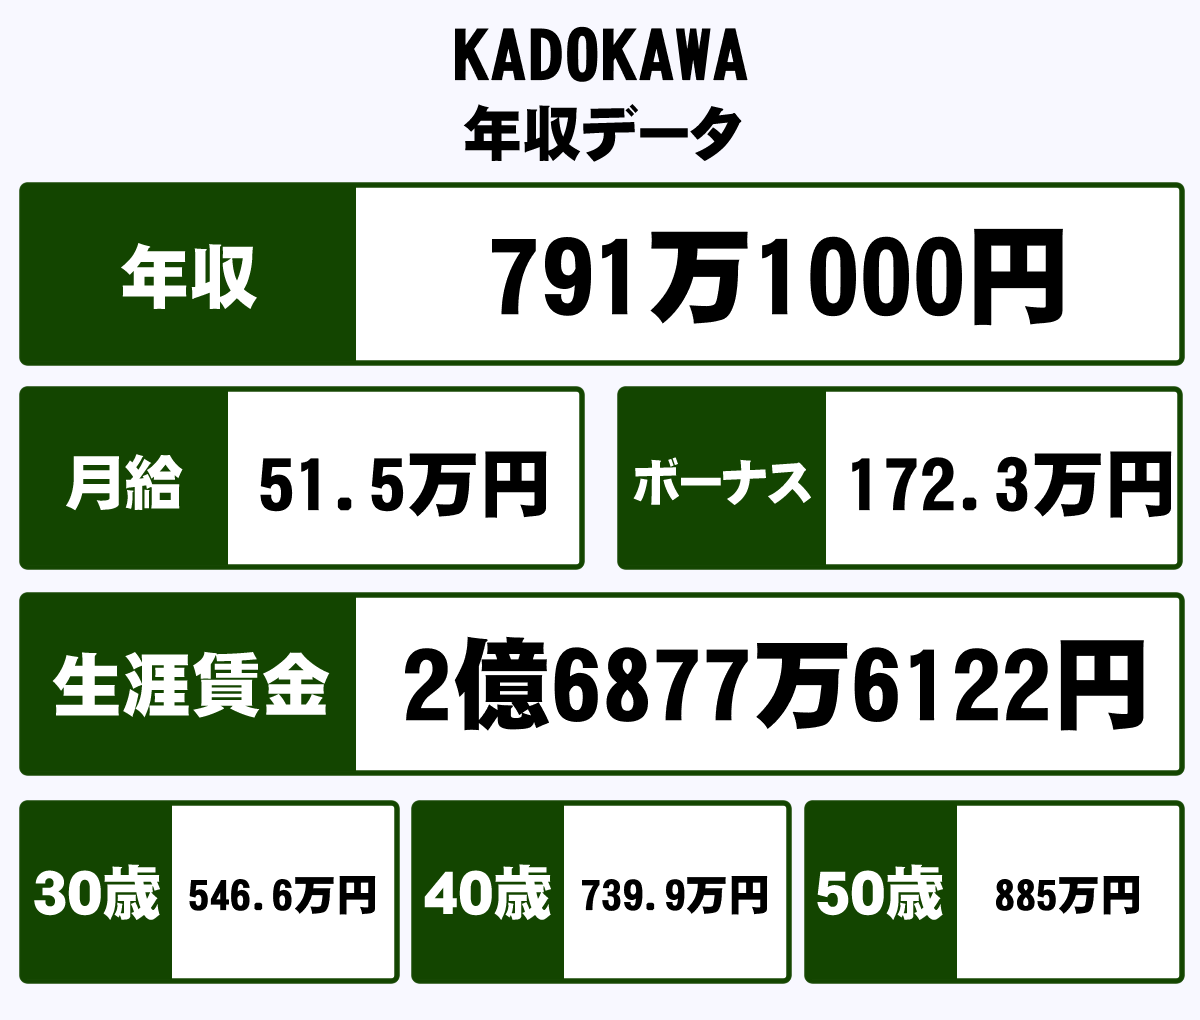 株式会社kadokawaの年収や生涯賃金など収入の全てがわかるページ 年収ガイド